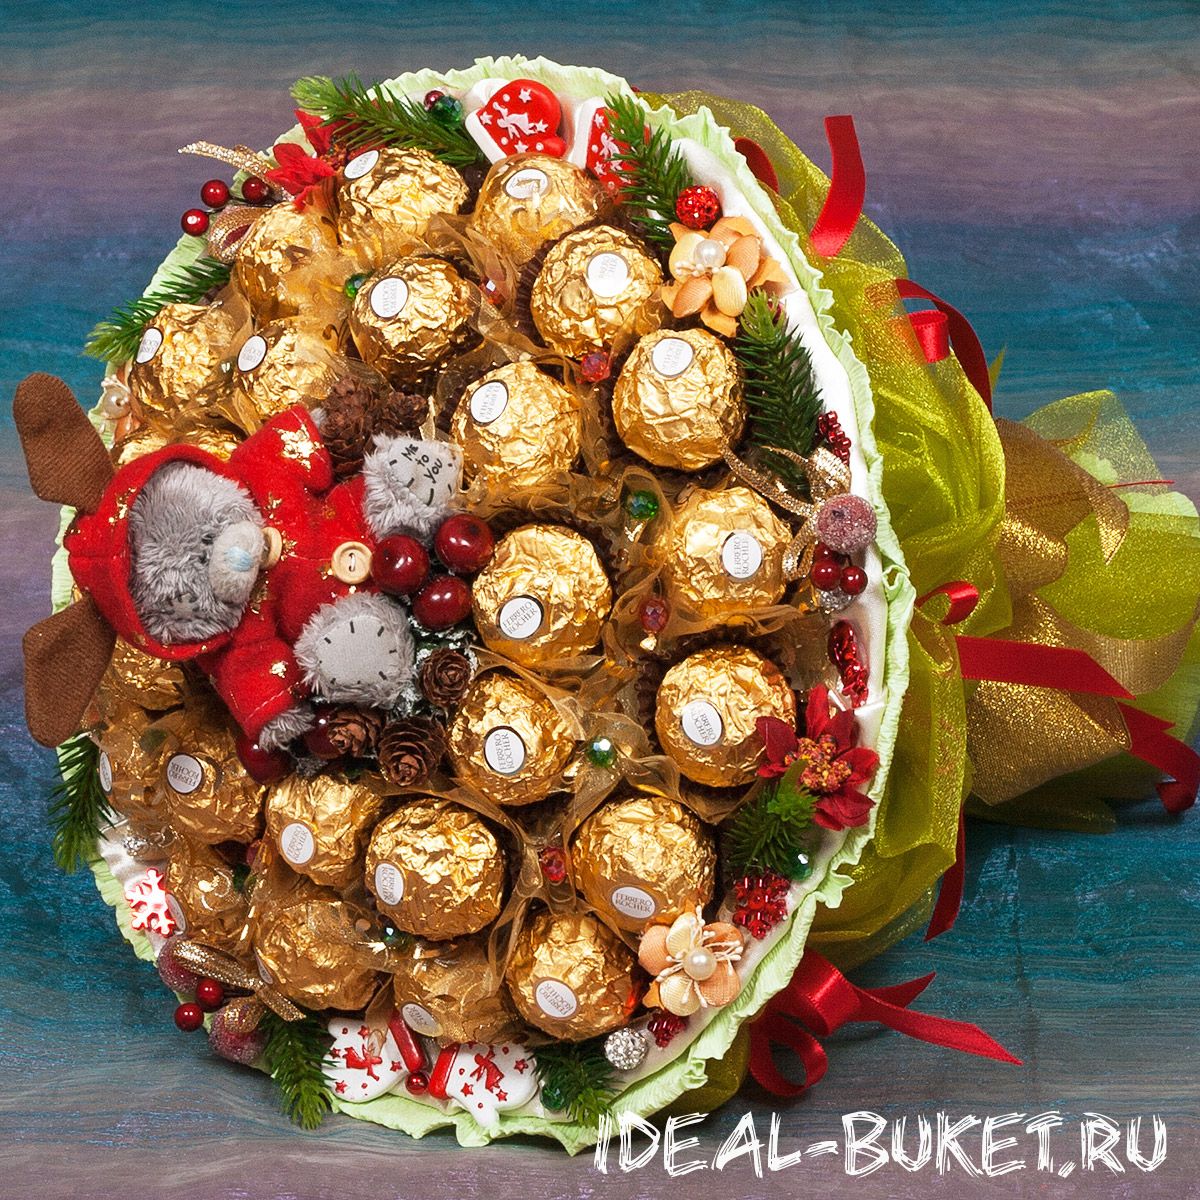 Букеты из конфет фото новогодние: Стильные новогодние букеты с конфетами, цена 1000 руб, DM-11